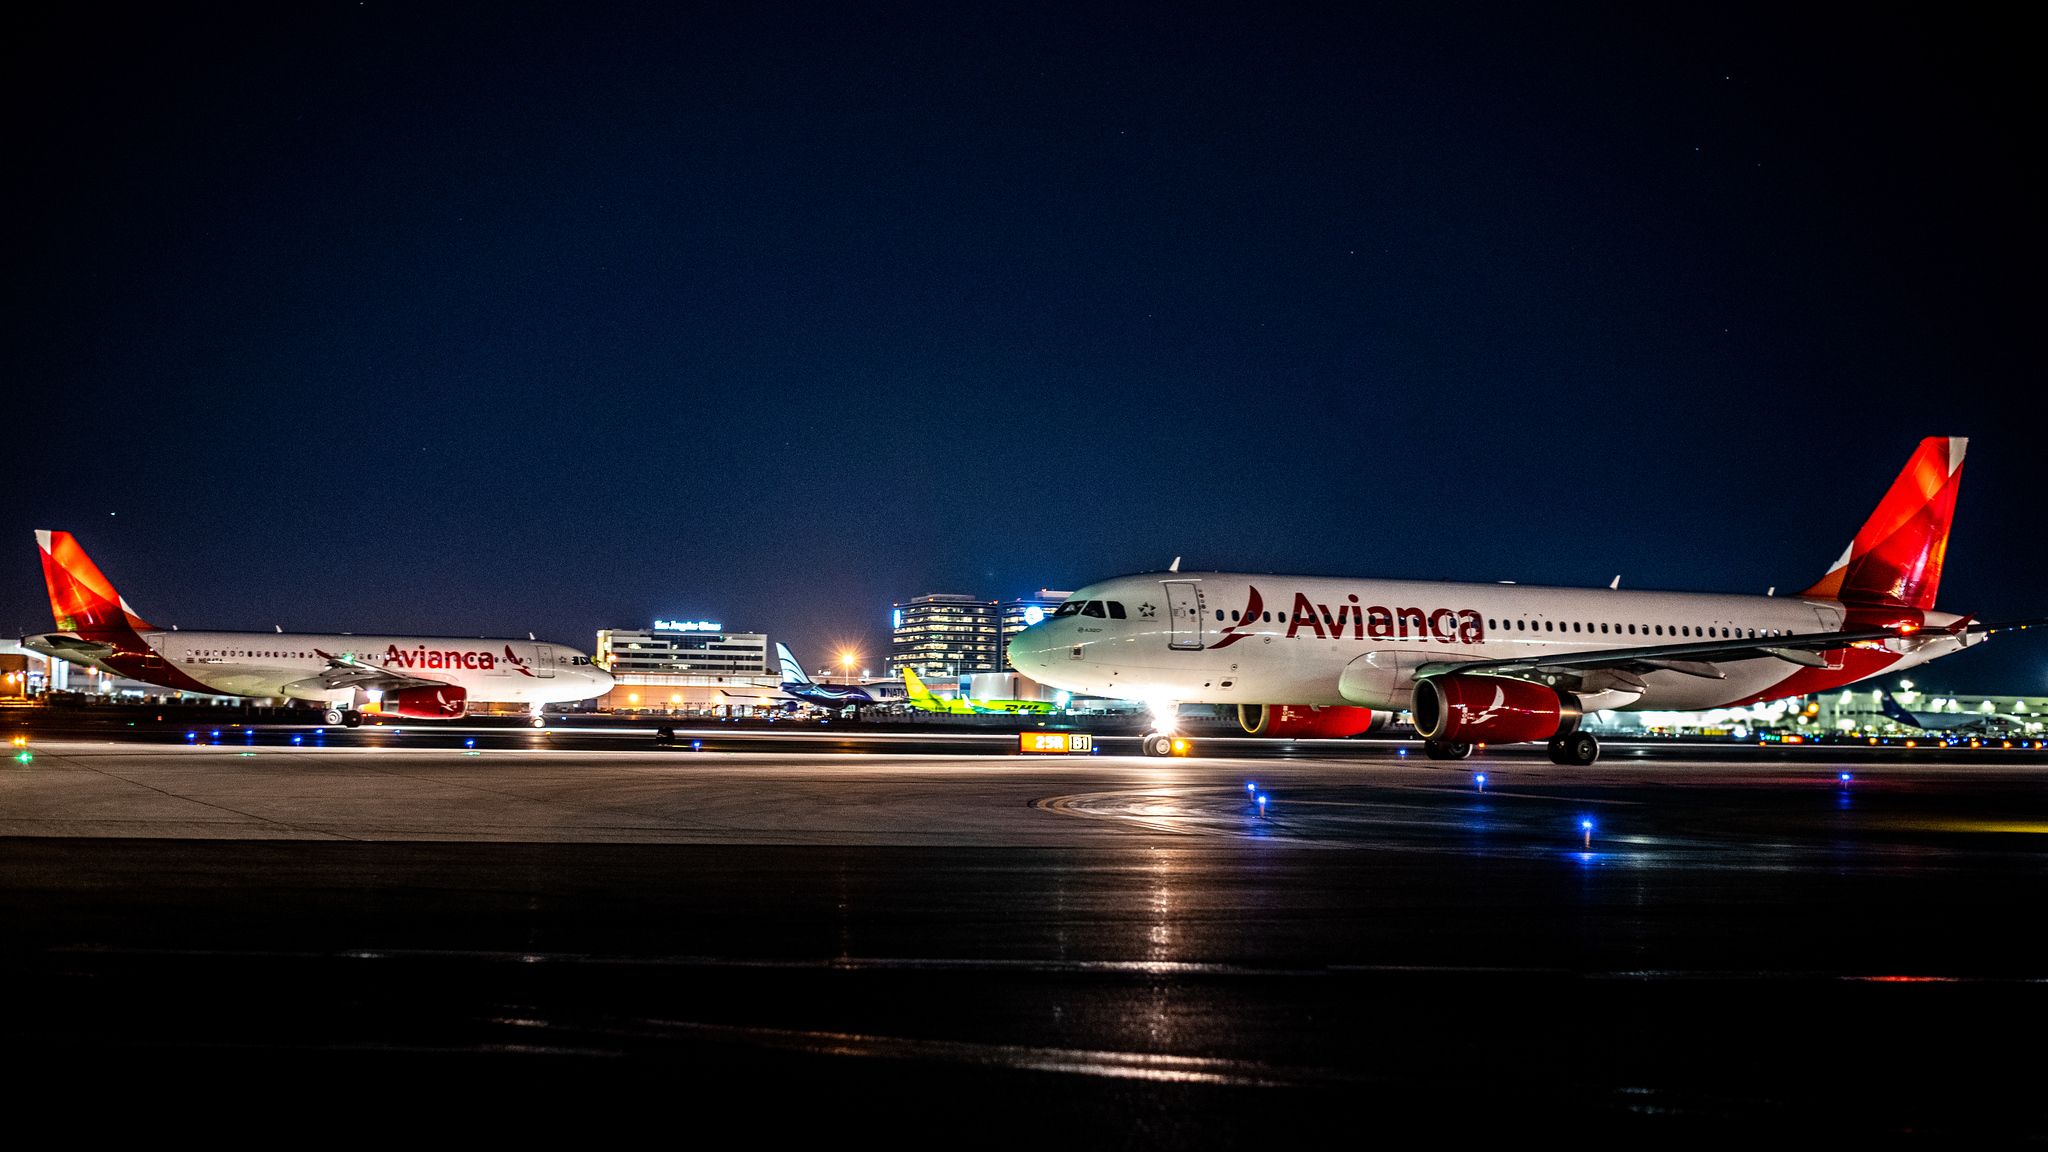 Avainca Aircraft at LAX Airport